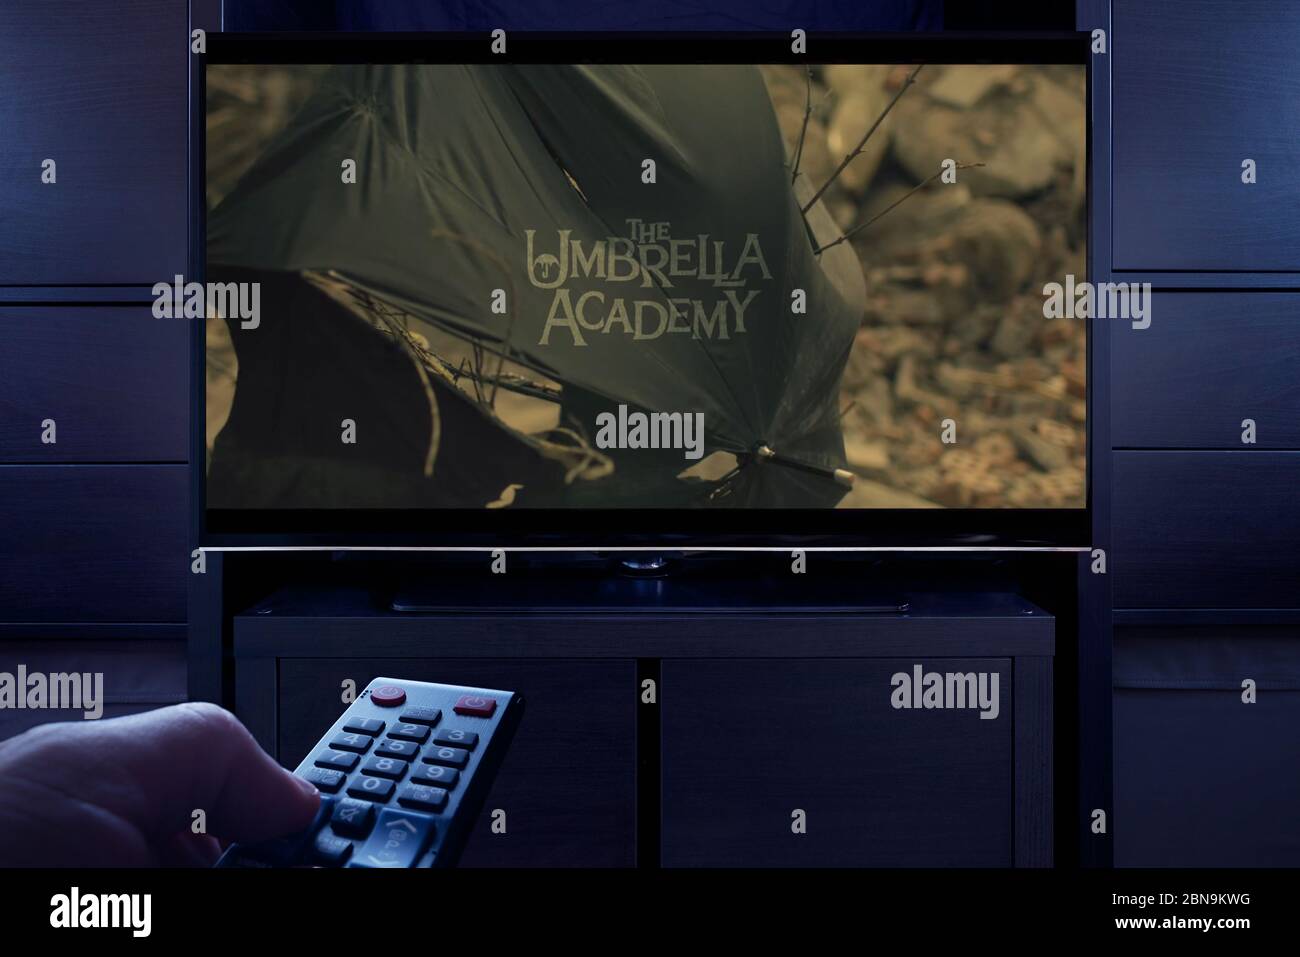 Un hombre apunta un mando a distancia de la televisión que muestra la pantalla principal del título de la Academia de paraguas (sólo para uso editorial). Foto de stock